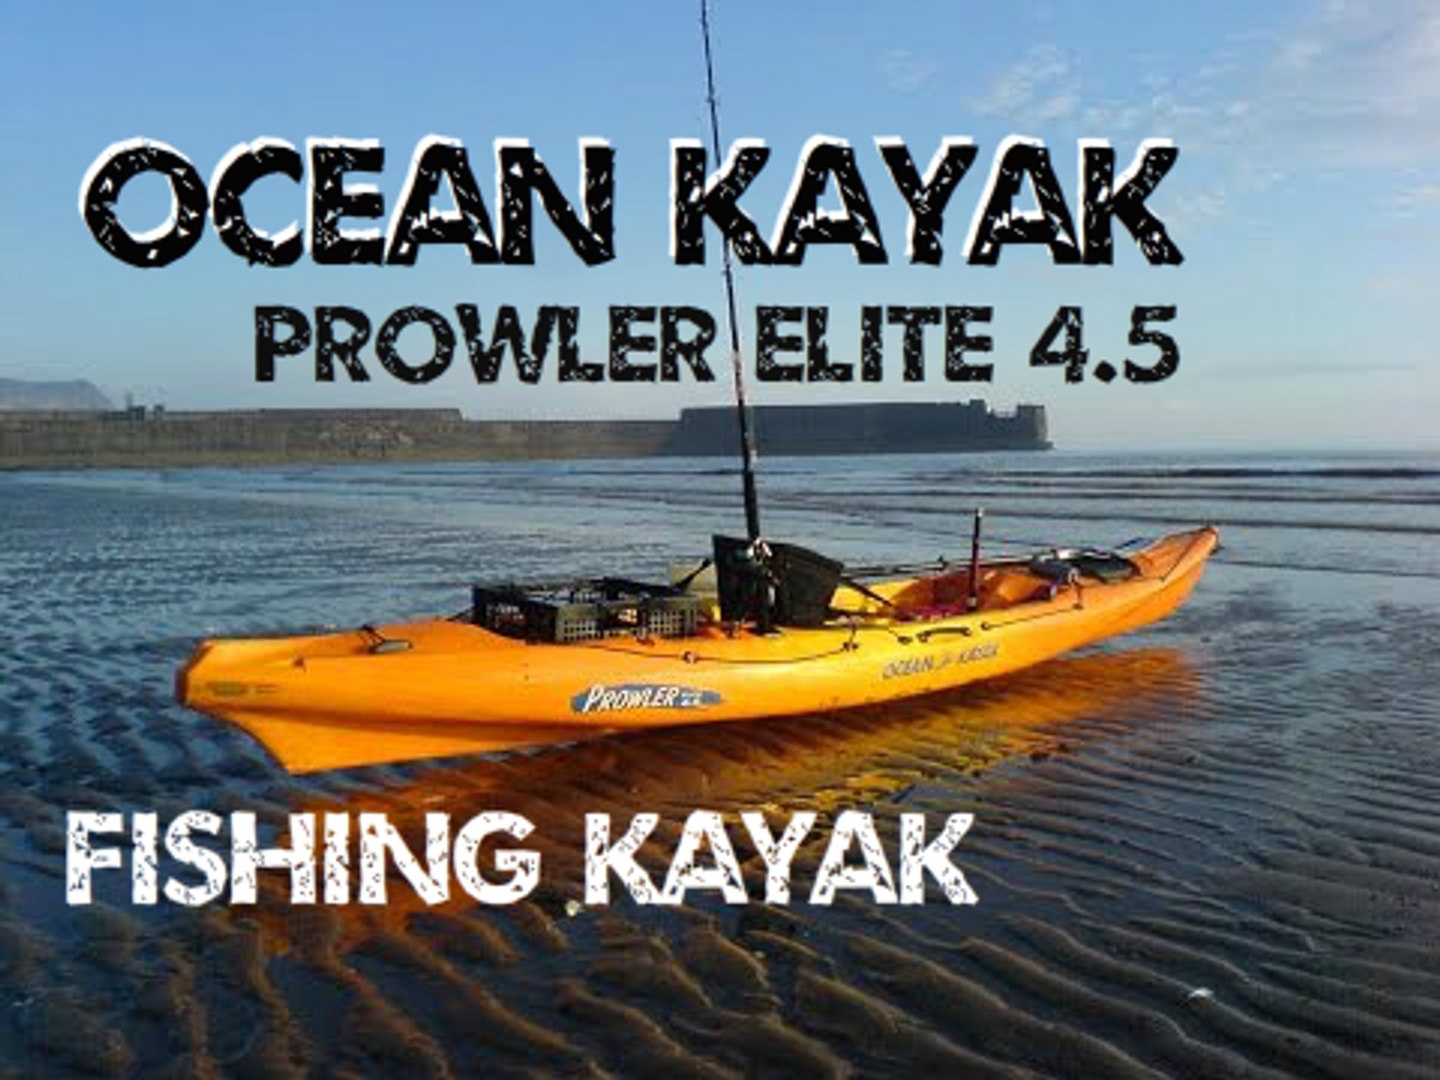 Fishing Kayak - Ocean Kayak Prowler Elite 4.5 Fishing Kayak - video  Dailymotion